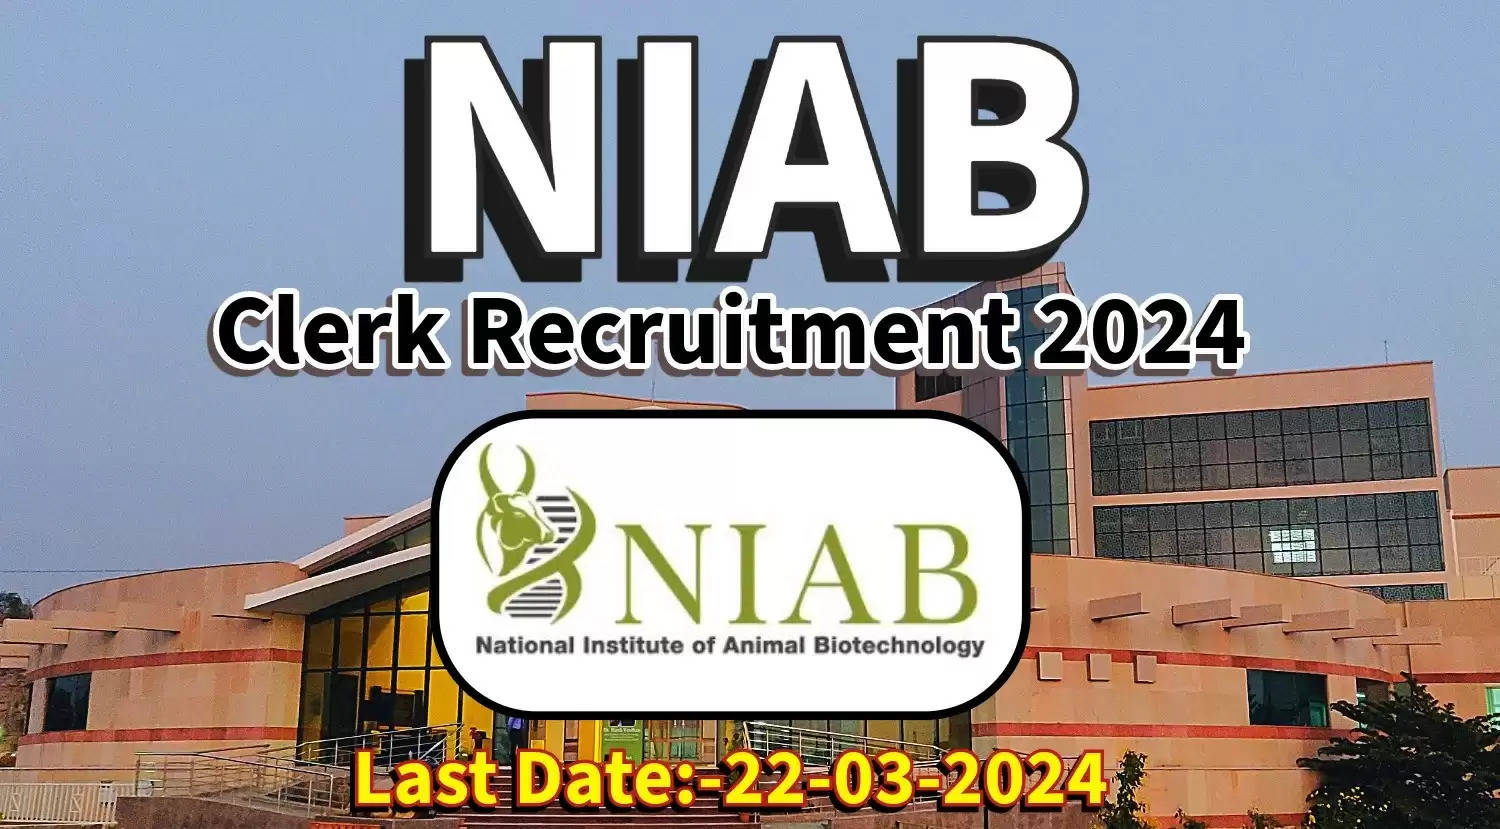 NIAB क्लर्क भर्ती 2024 की अधिसूचना जारी, पात्रता मानदंड और आवेदन प्रक्रिया की जाँच करें